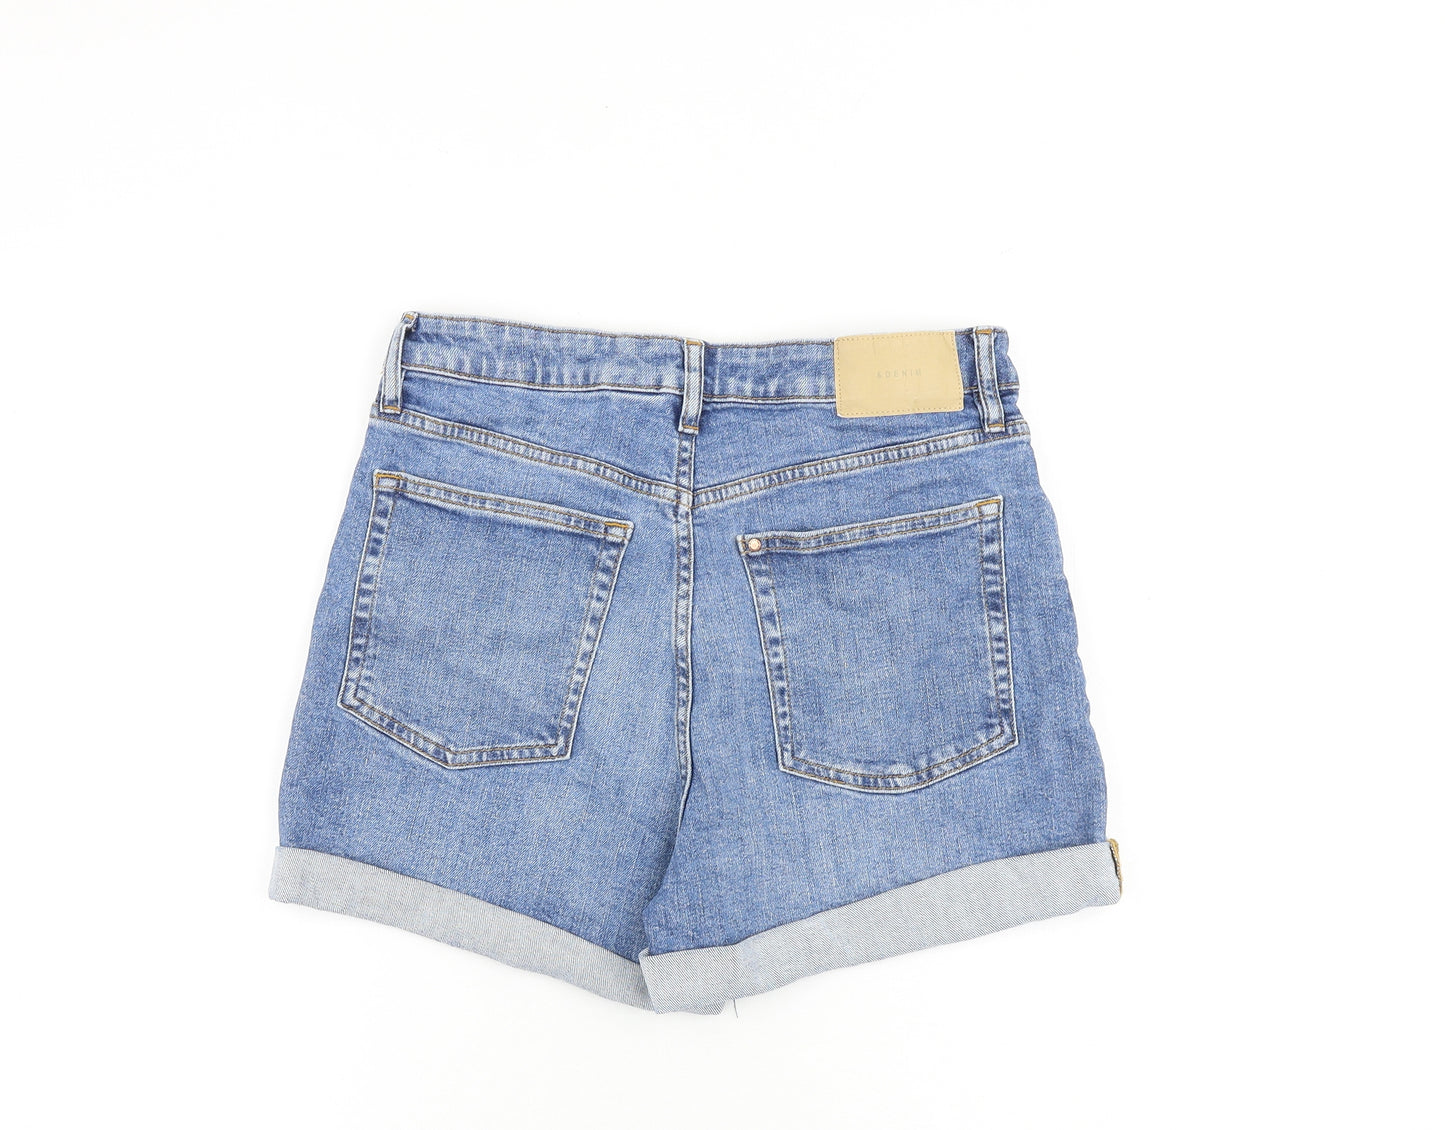 H&M Womens Blue Cotton Boyfriend Shorts Size 12 L3 in Regular Zip